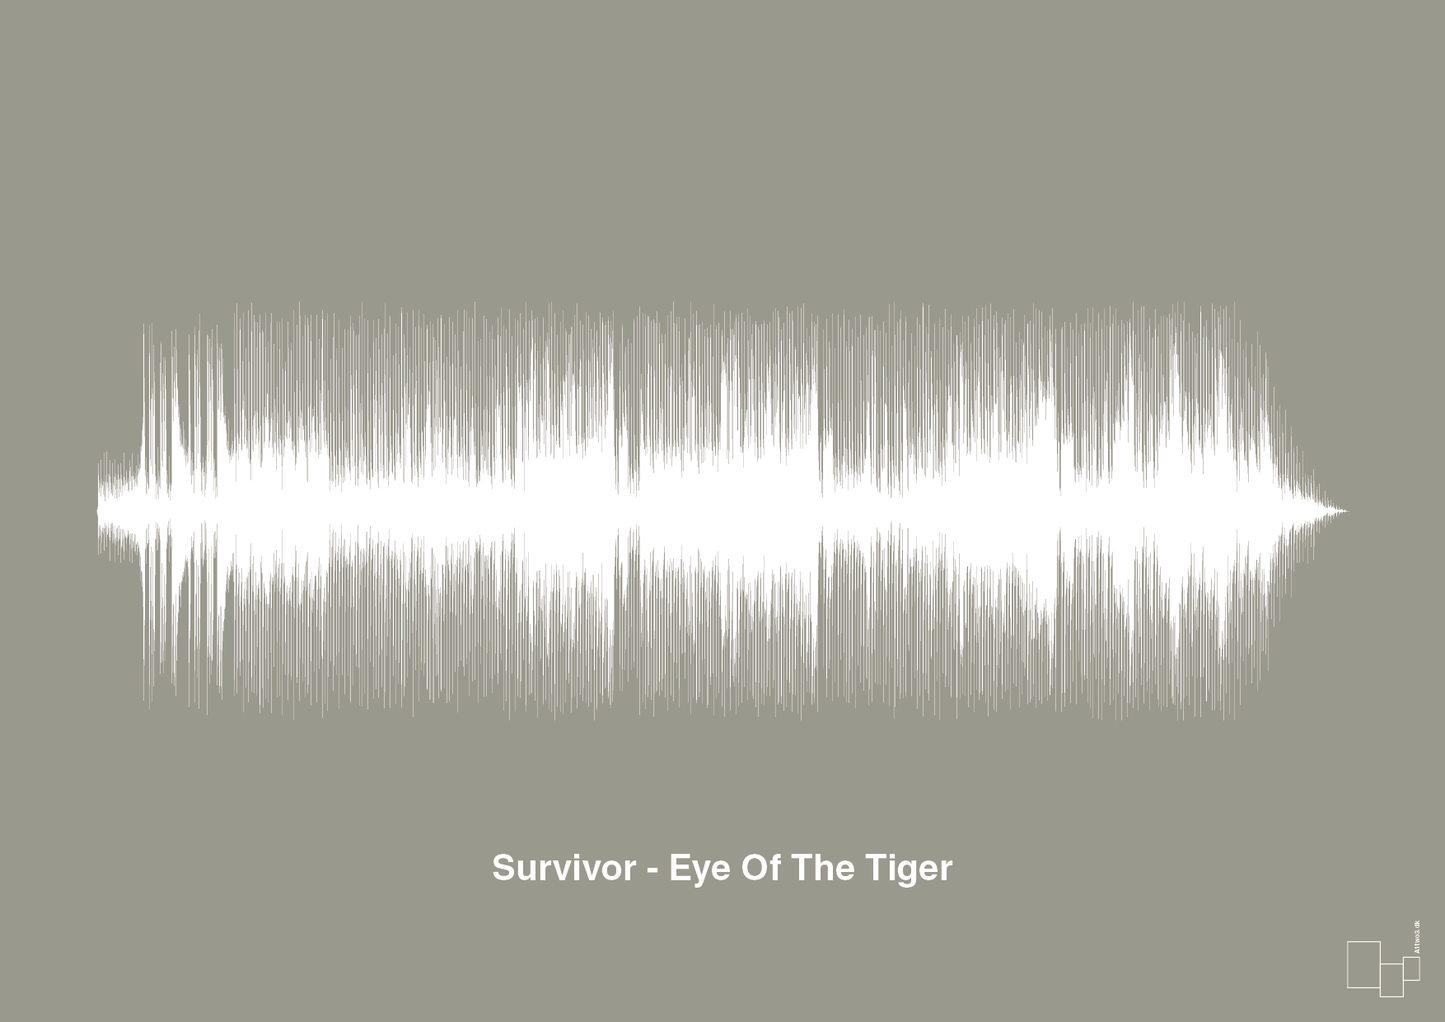 survivor - eye of the tiger - Plakat med Musik i Battleship Gray